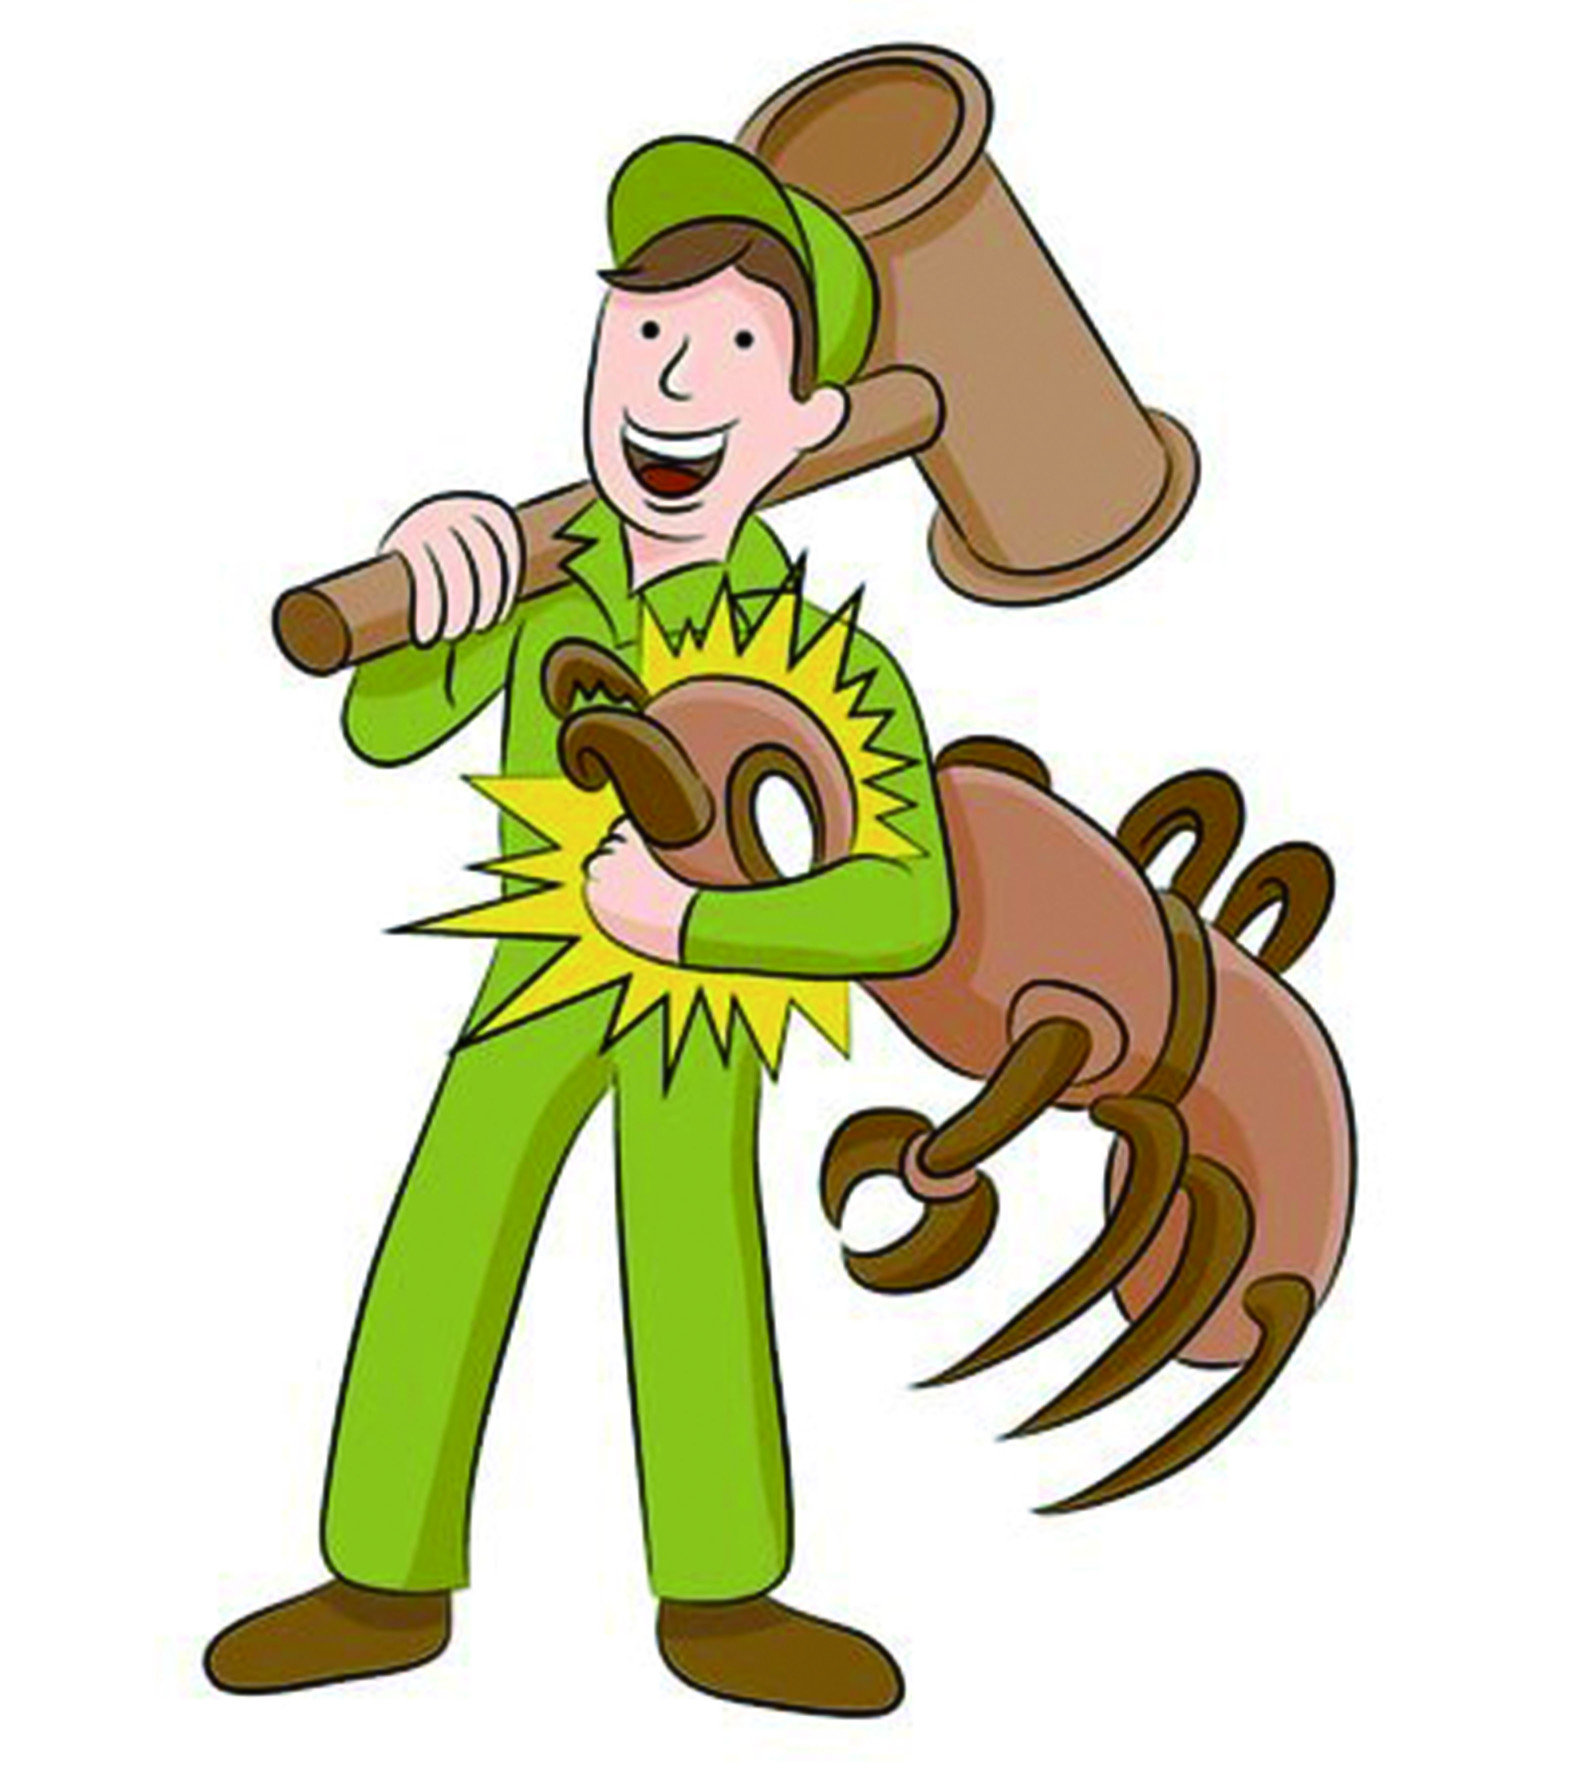 【除乾木白蟻】可穿透木材的外來種白蟻，對於木製傢俱危害超乎想像 !